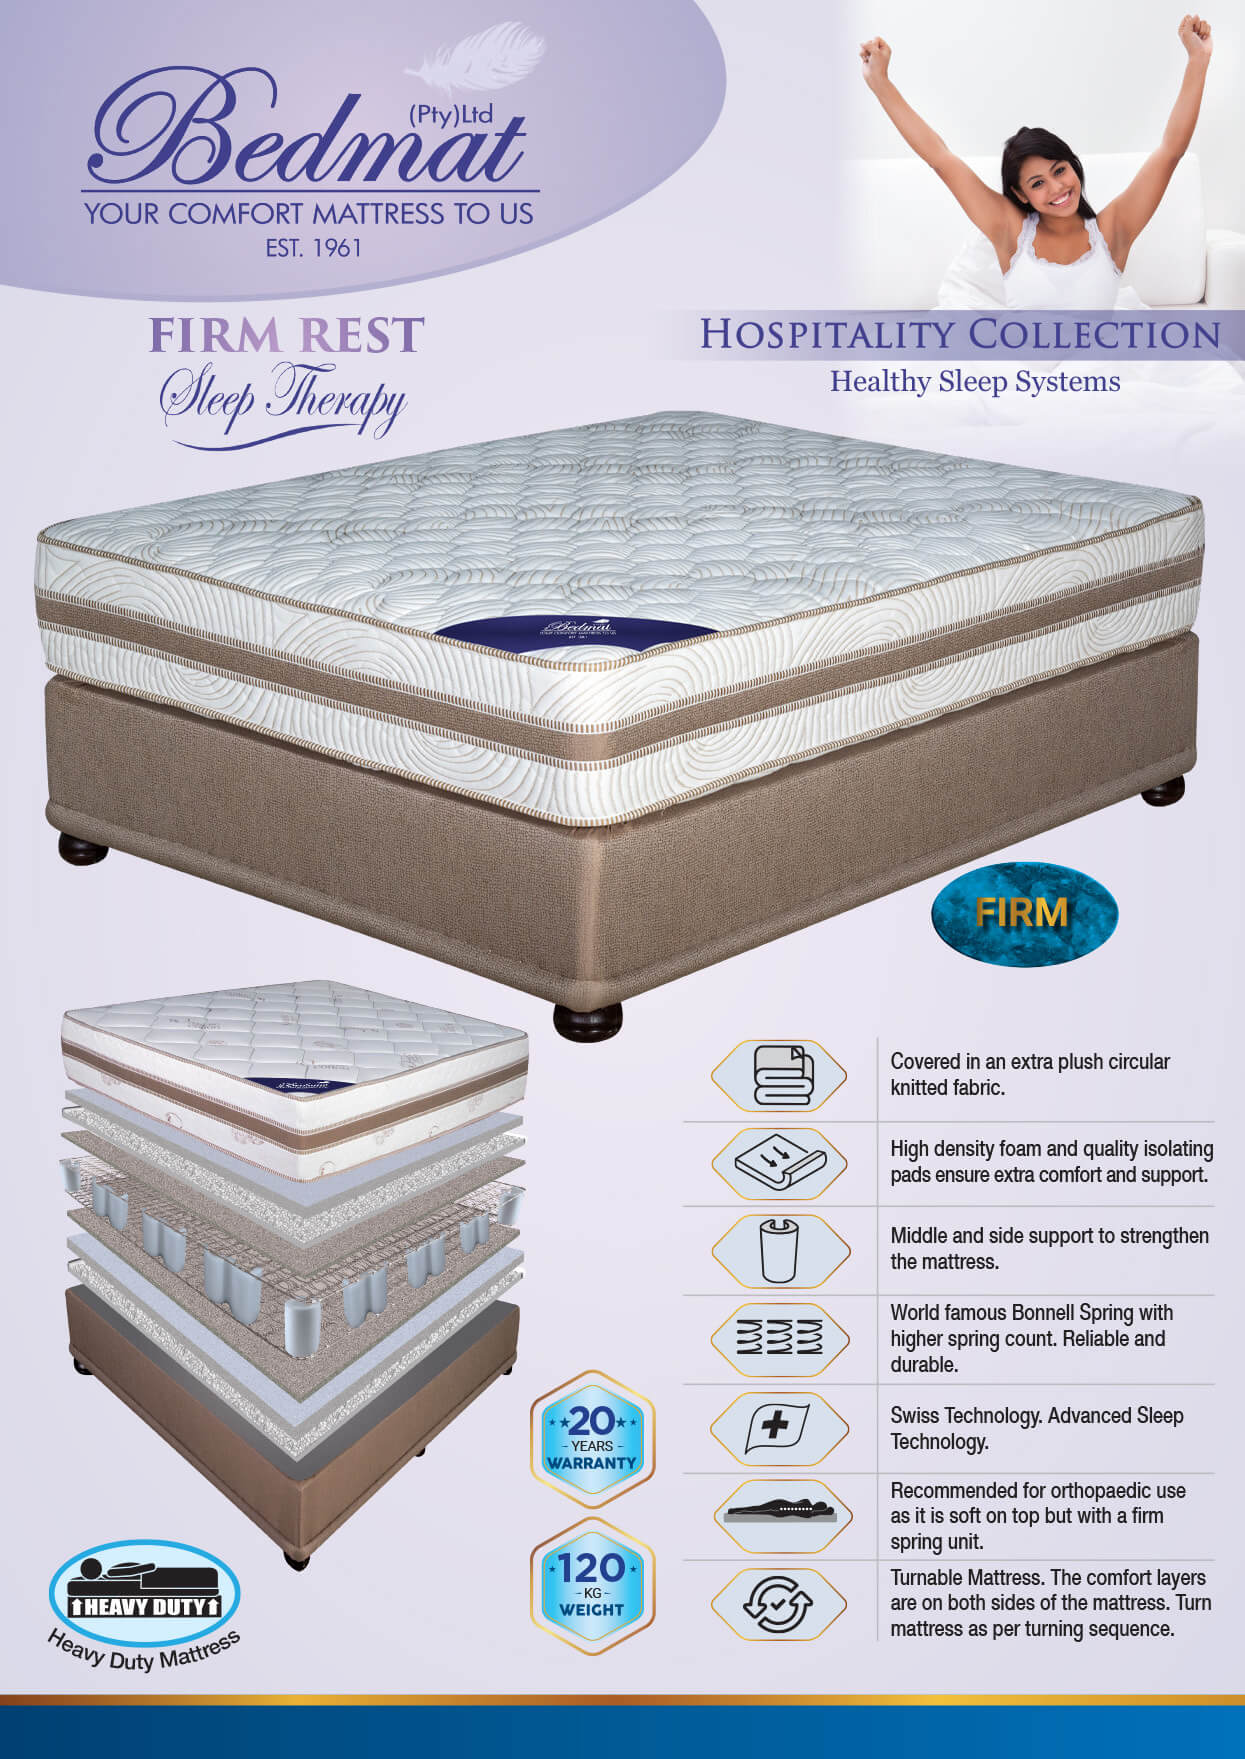 Firm rest mattress and description